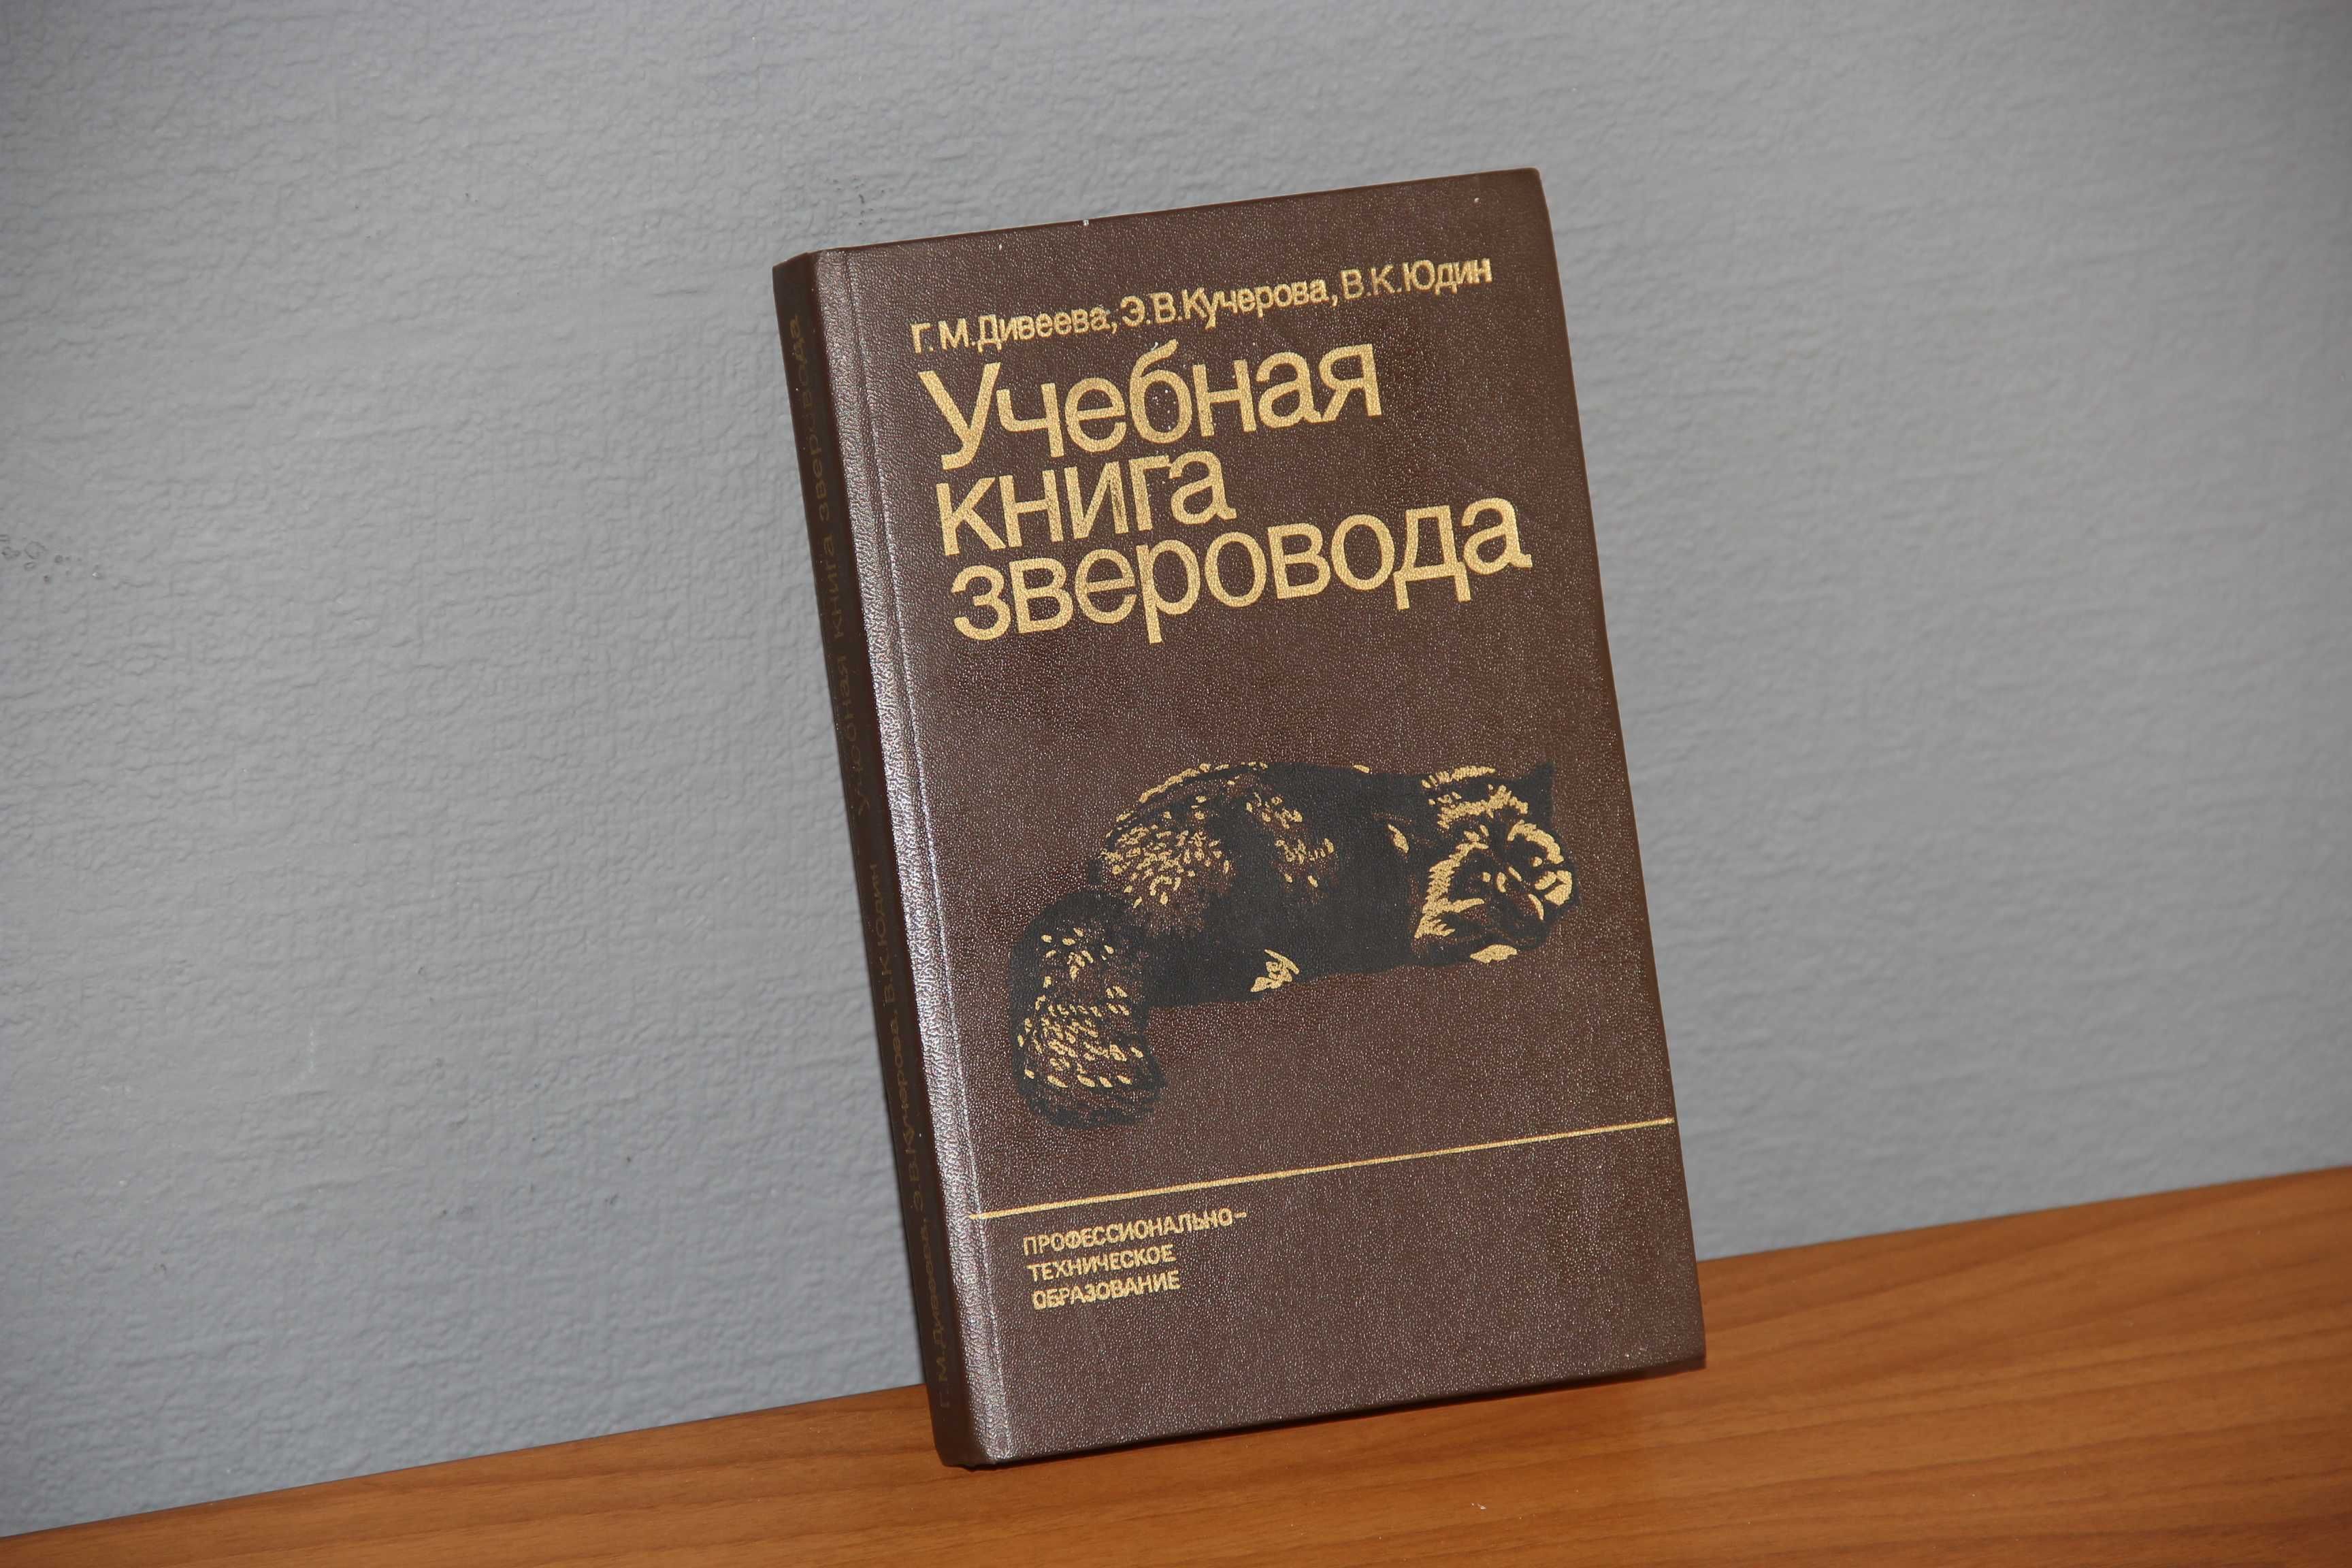 Учебная книга зверовода. Дивеева Г. и др. М.: Агропромиздат, 1985